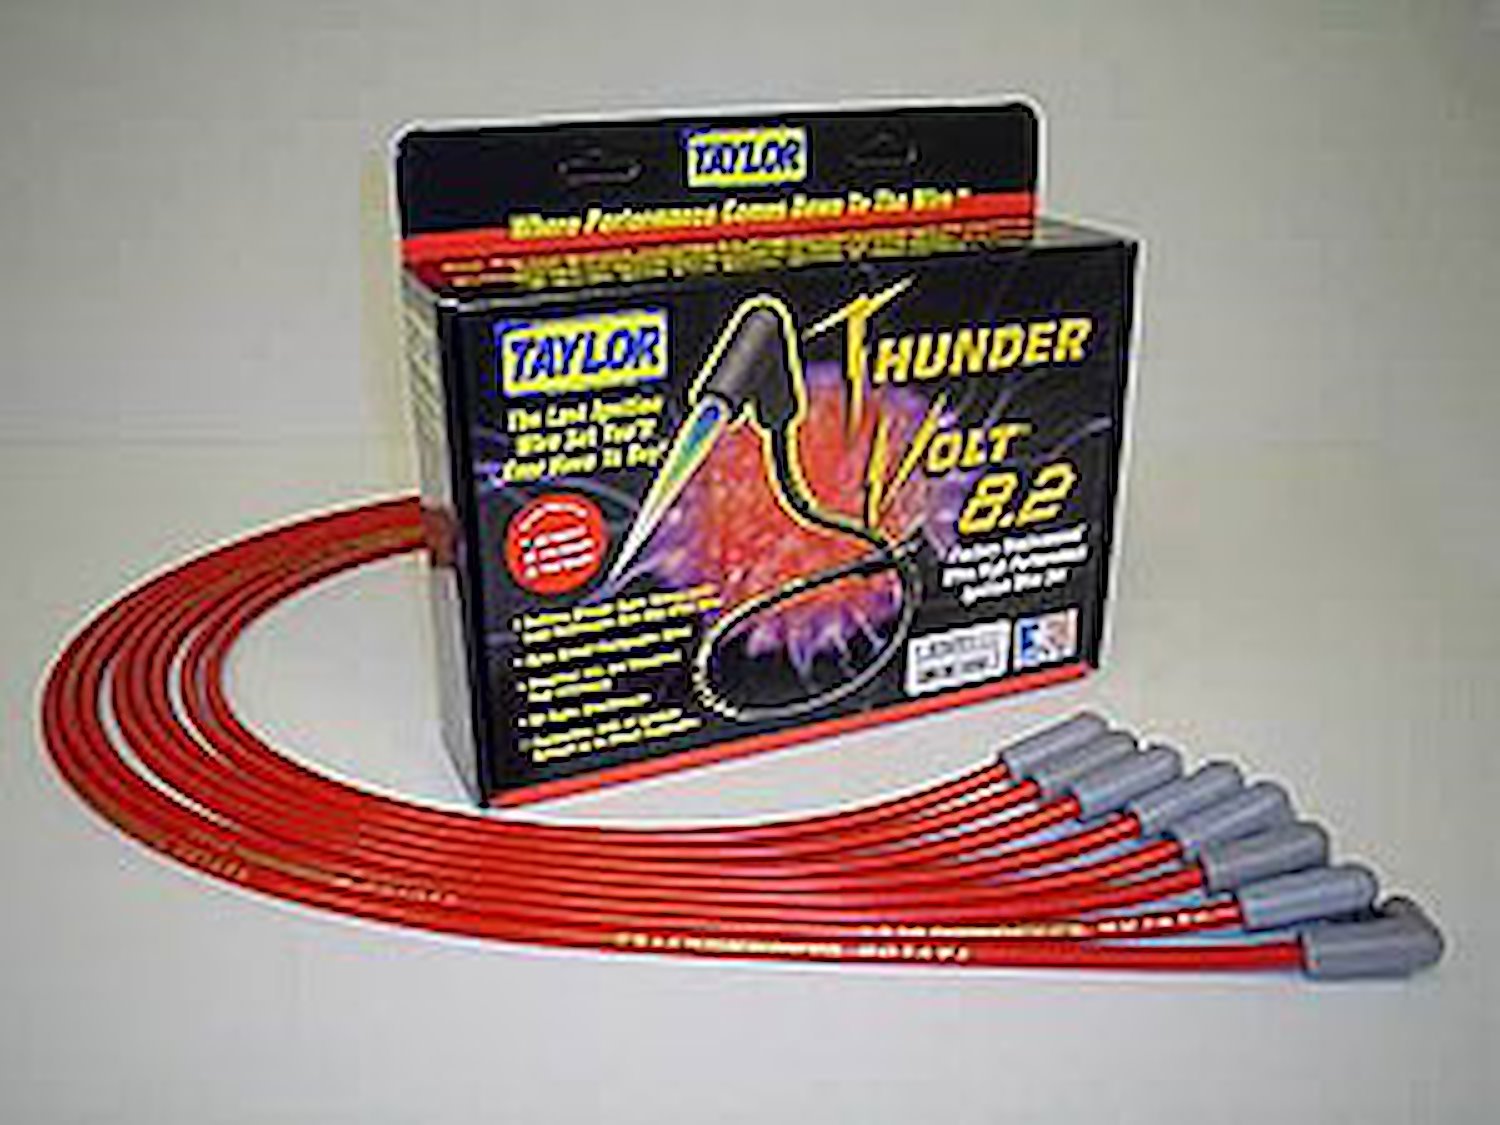 ThunderVolt 8.2mm Spark Plug Wires 1999-2002 Ford Contour/Mercury Mystique 2.0L